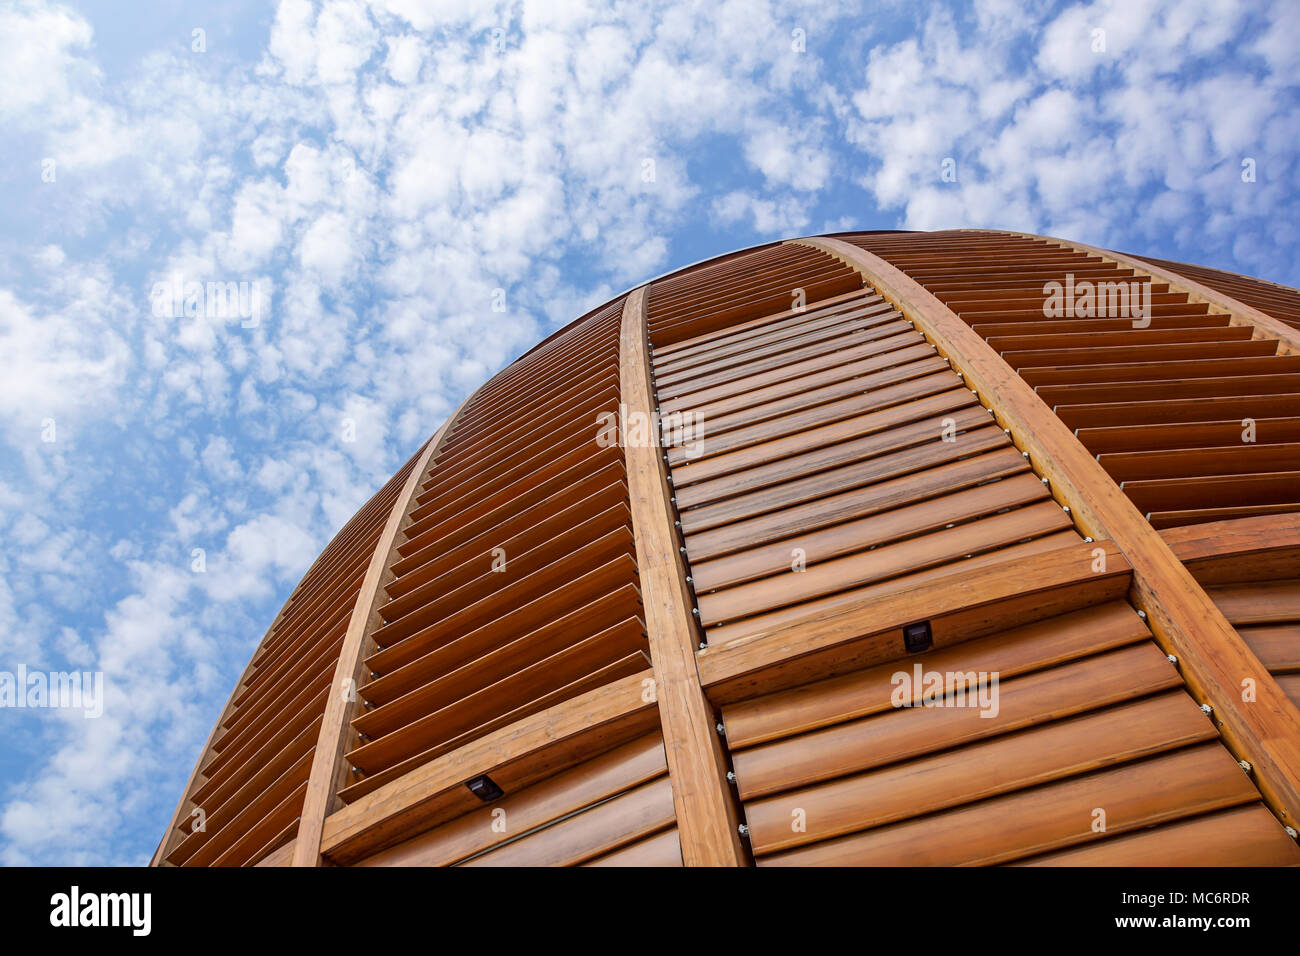 Mailand, Italien, 22. Juni 2017: Kuppeldach des Turms. Eine hölzerne Kuppel detail. Natürliche Materialien wie Holz zum Einsatz meoderni architektonischen Gebäuden zu erstellen Stockfoto